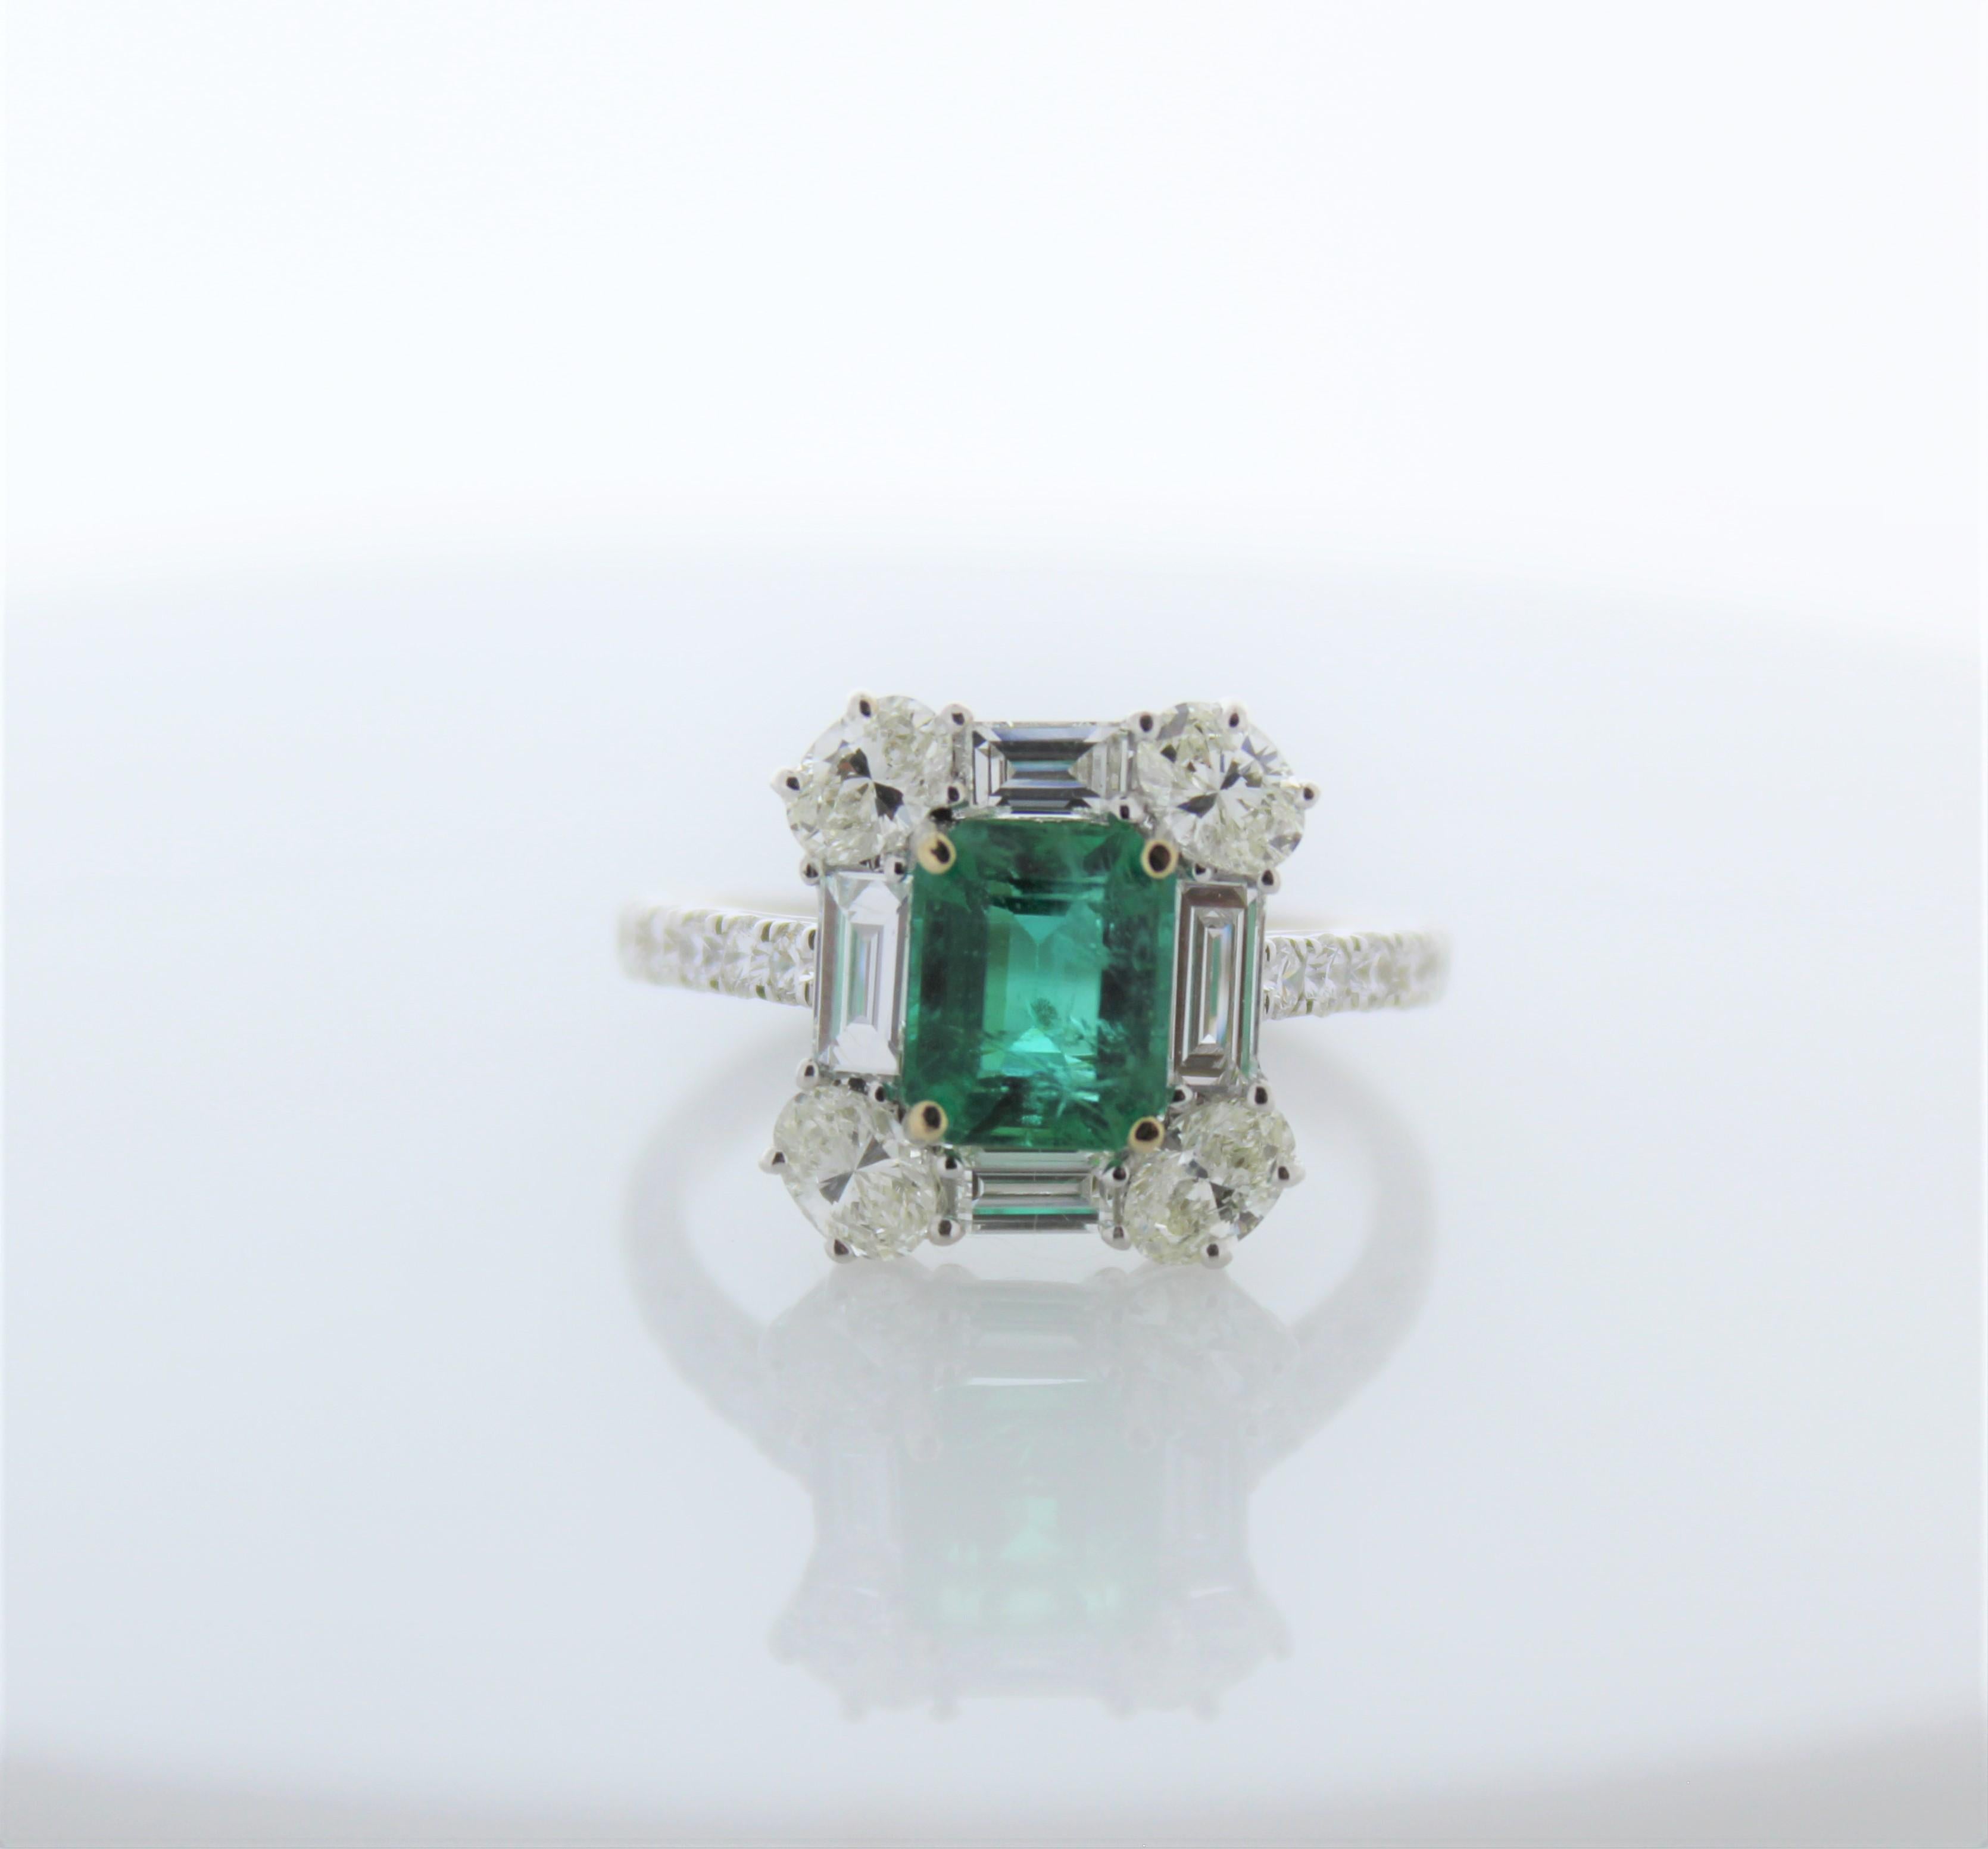 Dieser verschlungene Ring besteht aus einem quadratischen grünen Smaragd mit einem Gewicht von 1,55 Karat. Er ist umgeben von 20 natürlichen Diamanten mit einem Gesamtgewicht von 1,63 Karat.